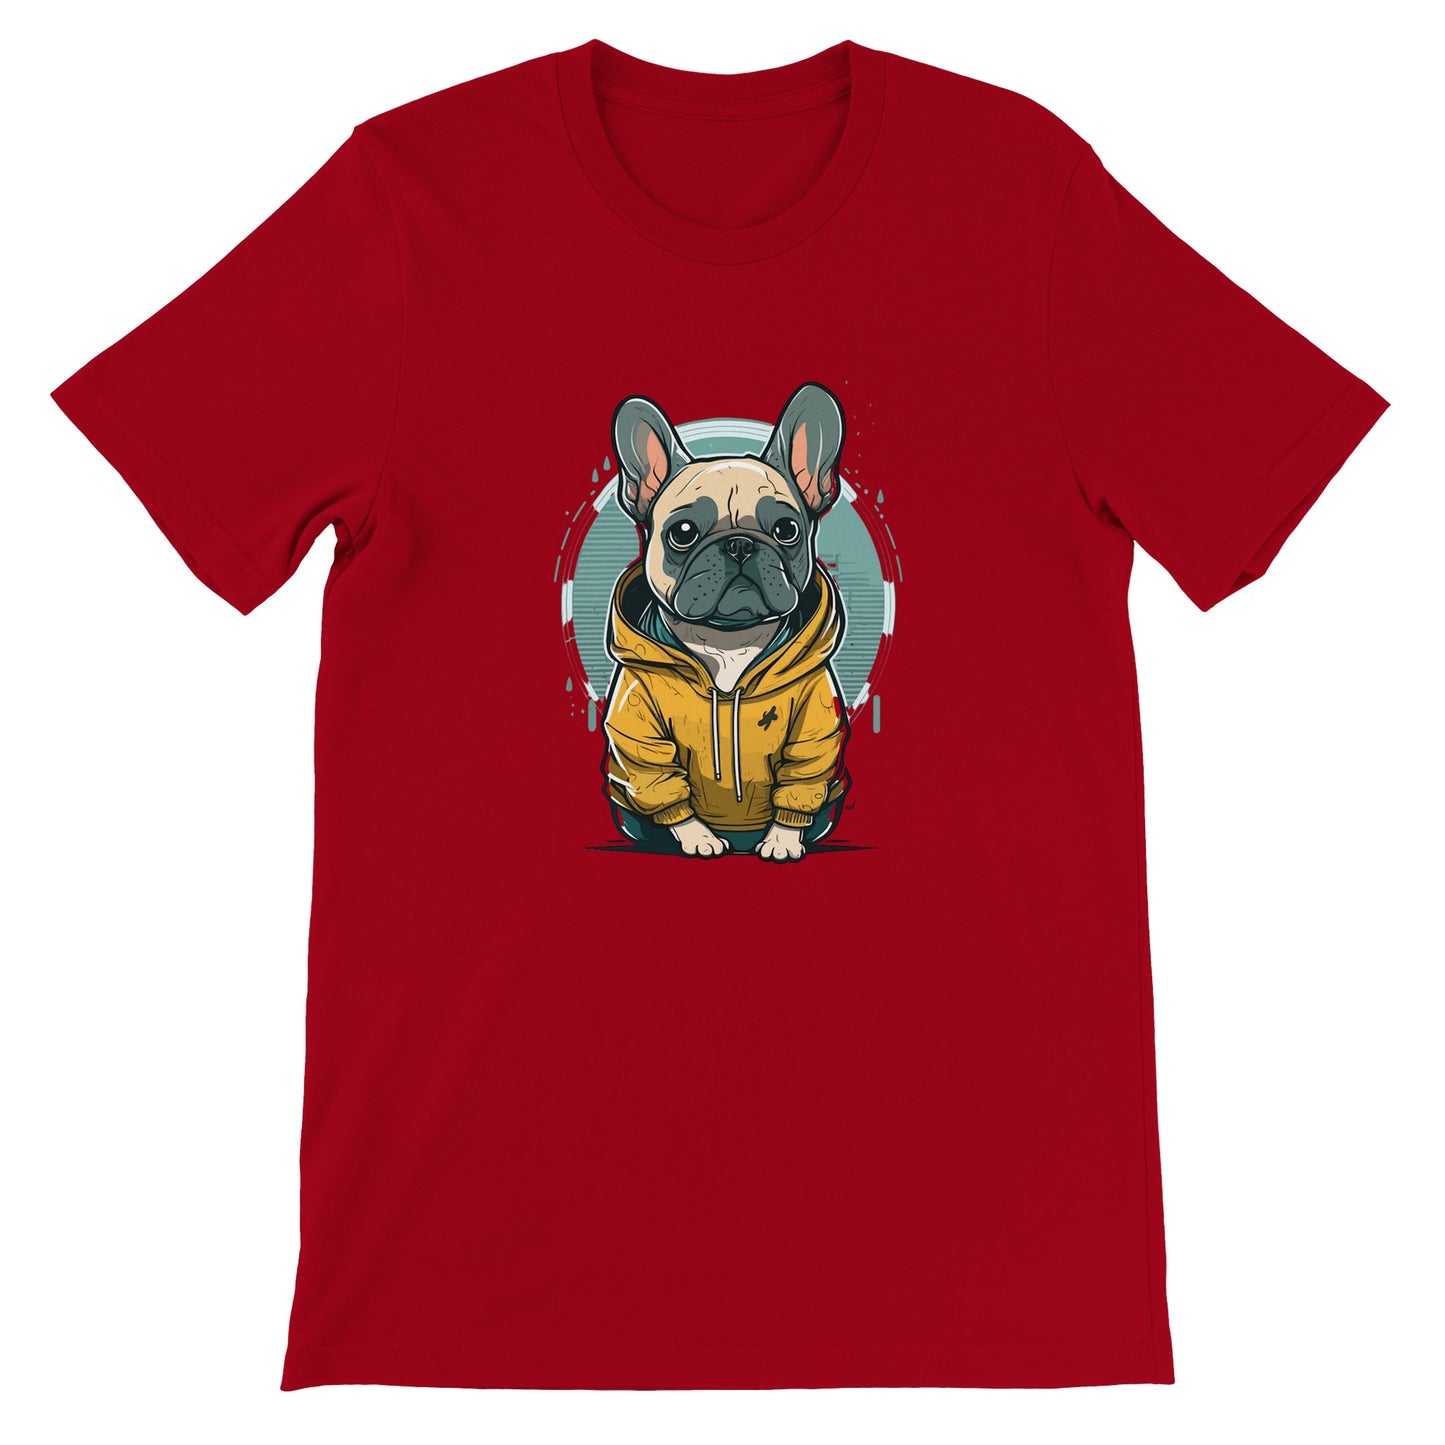 Dog T-shirt - French Bulldog Light and Yellow hoodie Artwork - Premium Unisex T-shirt 